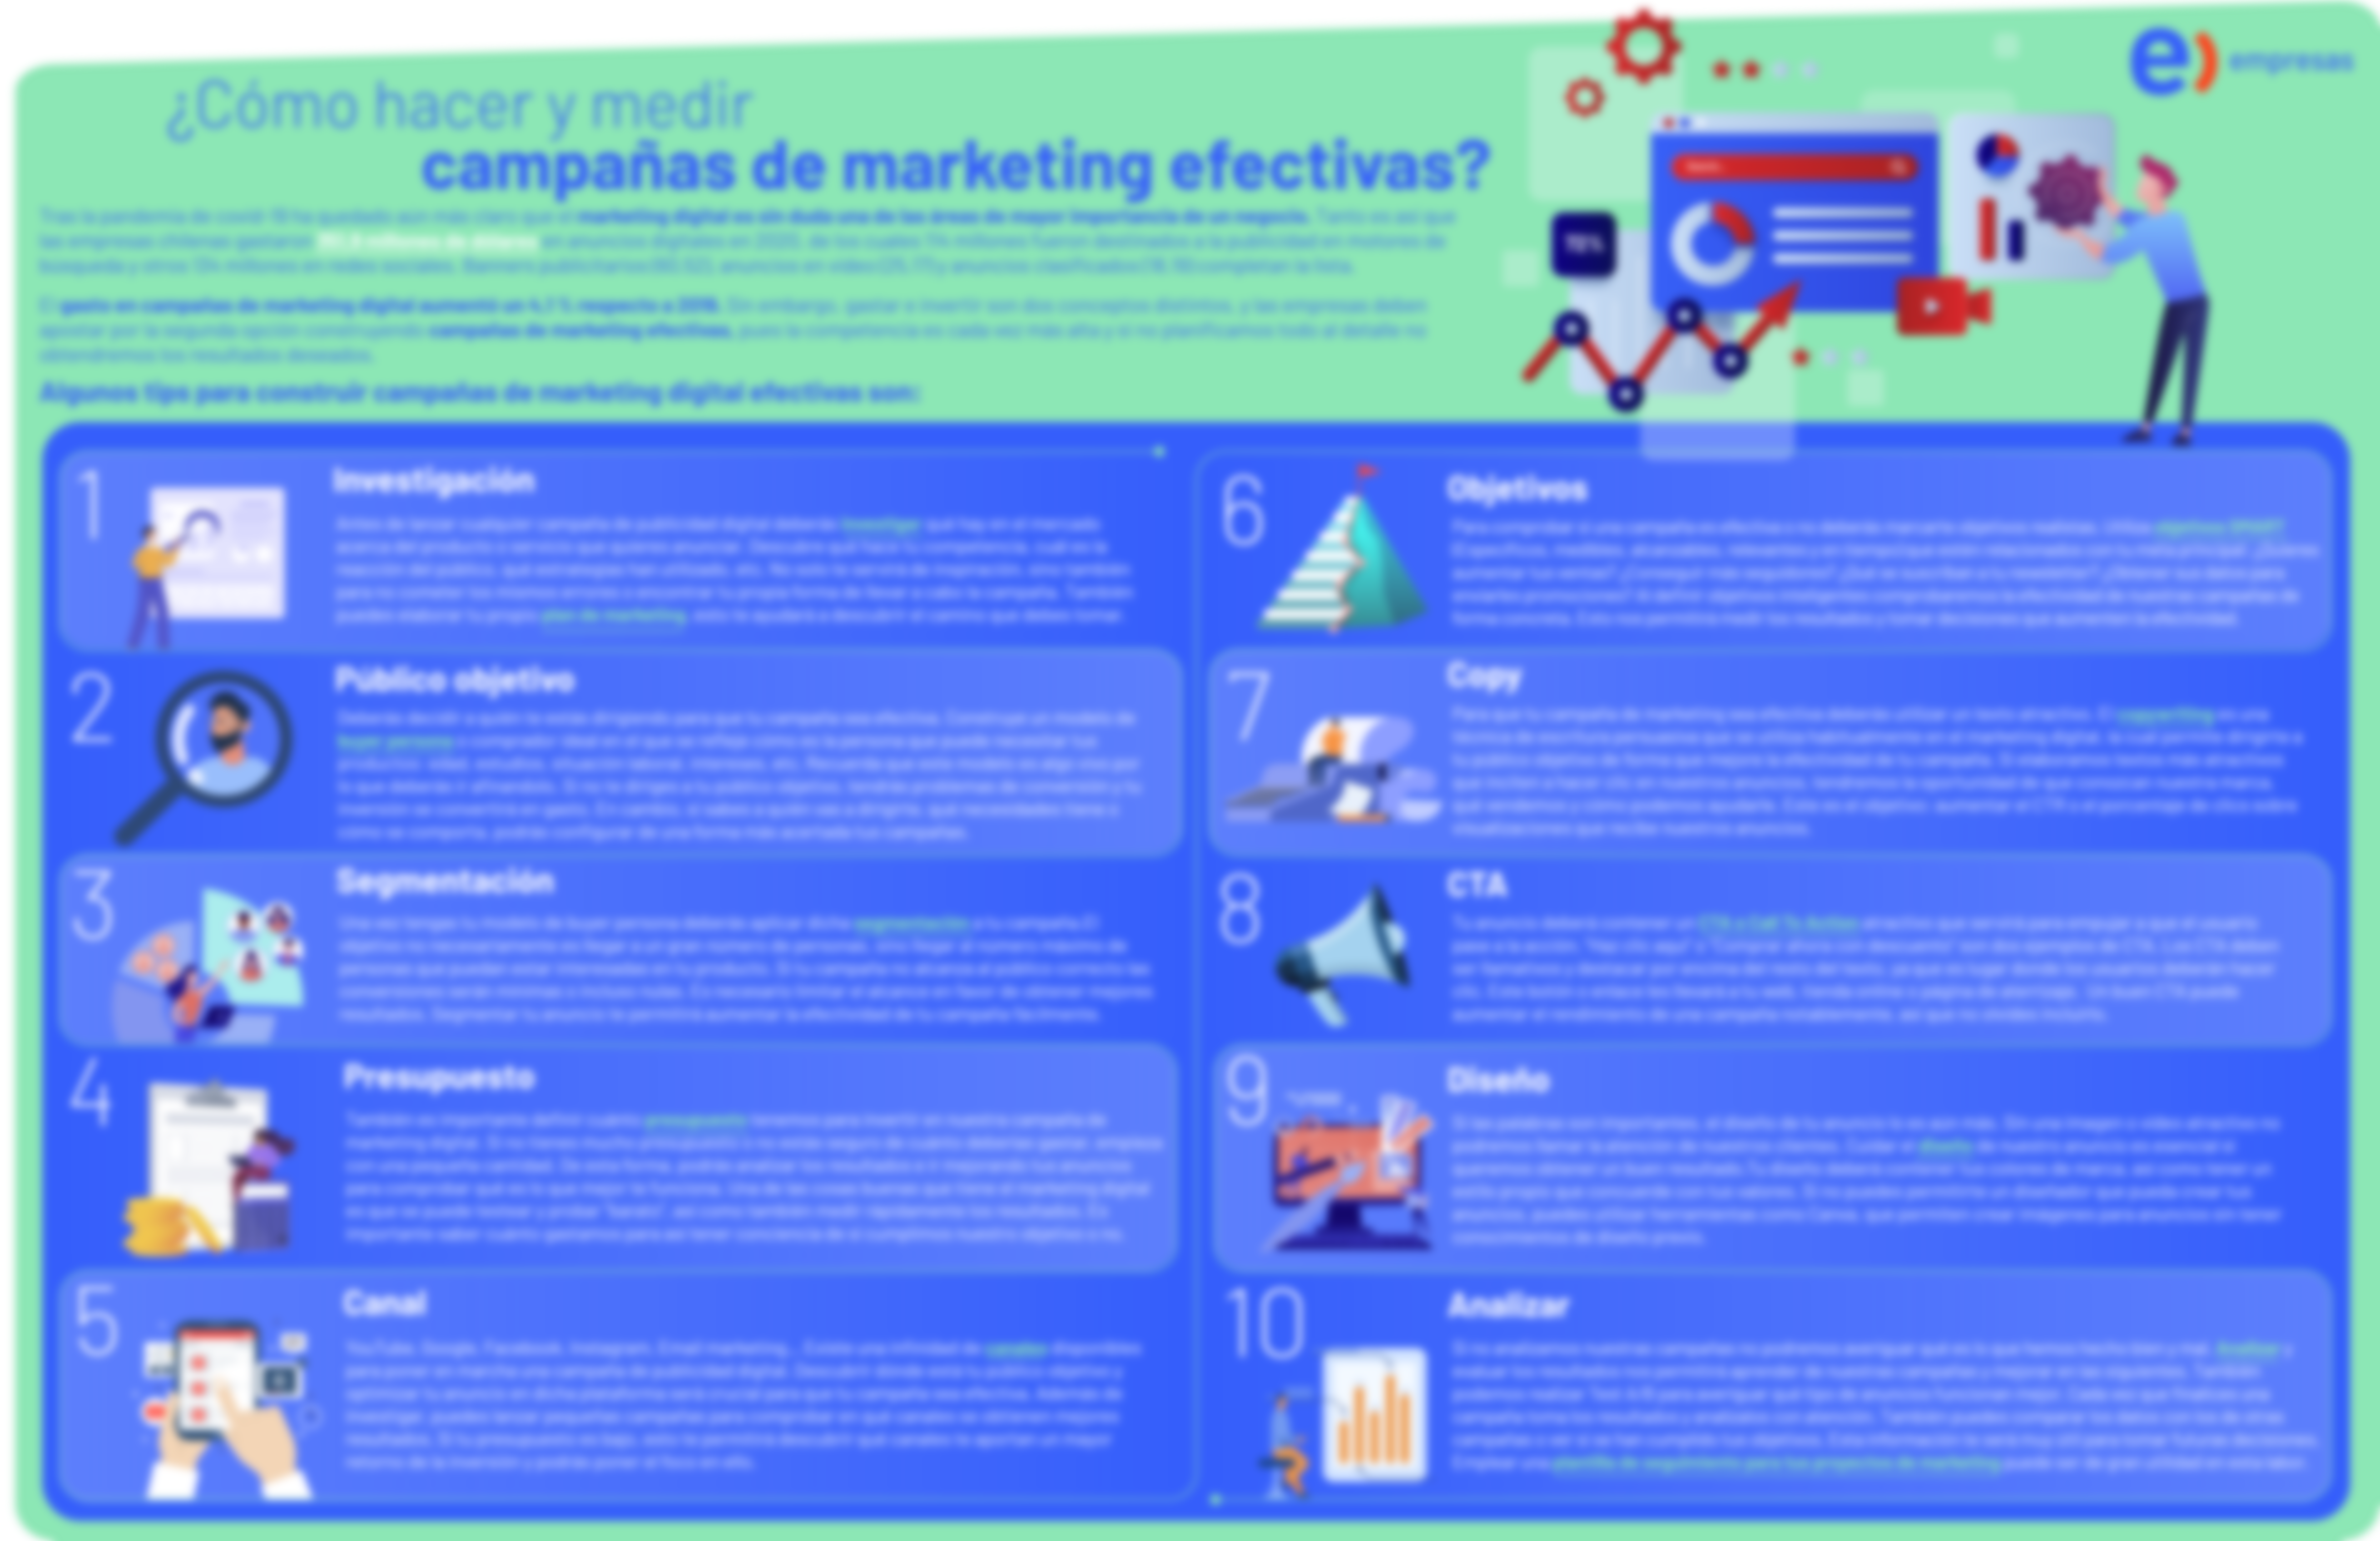 Info_efectividad en campañas de marketing-1 (1)